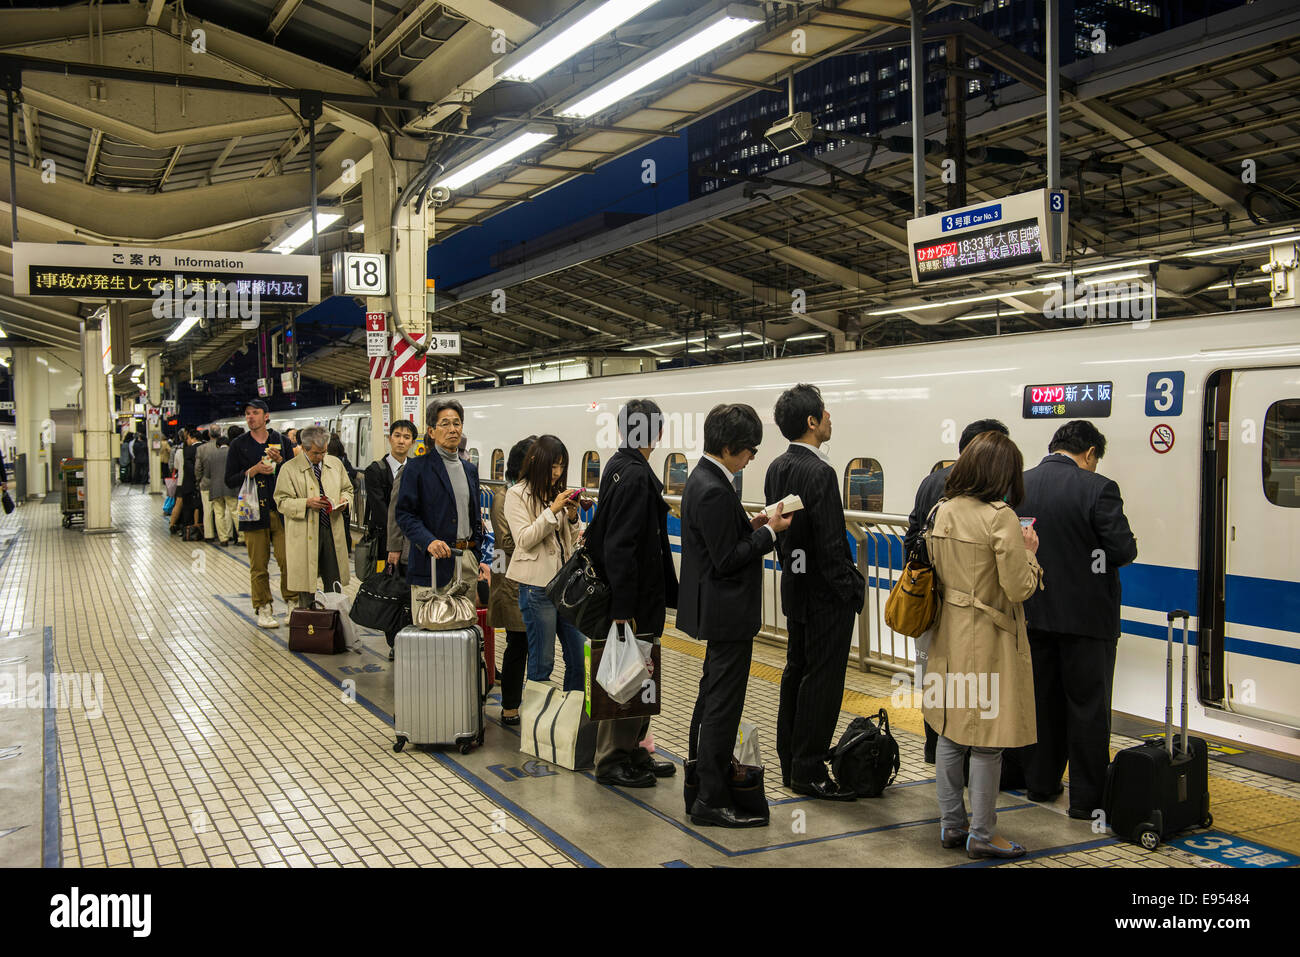 Los pasajeros esperando en línea, estación de tren shinkansen, Tokio, Japón Foto de stock